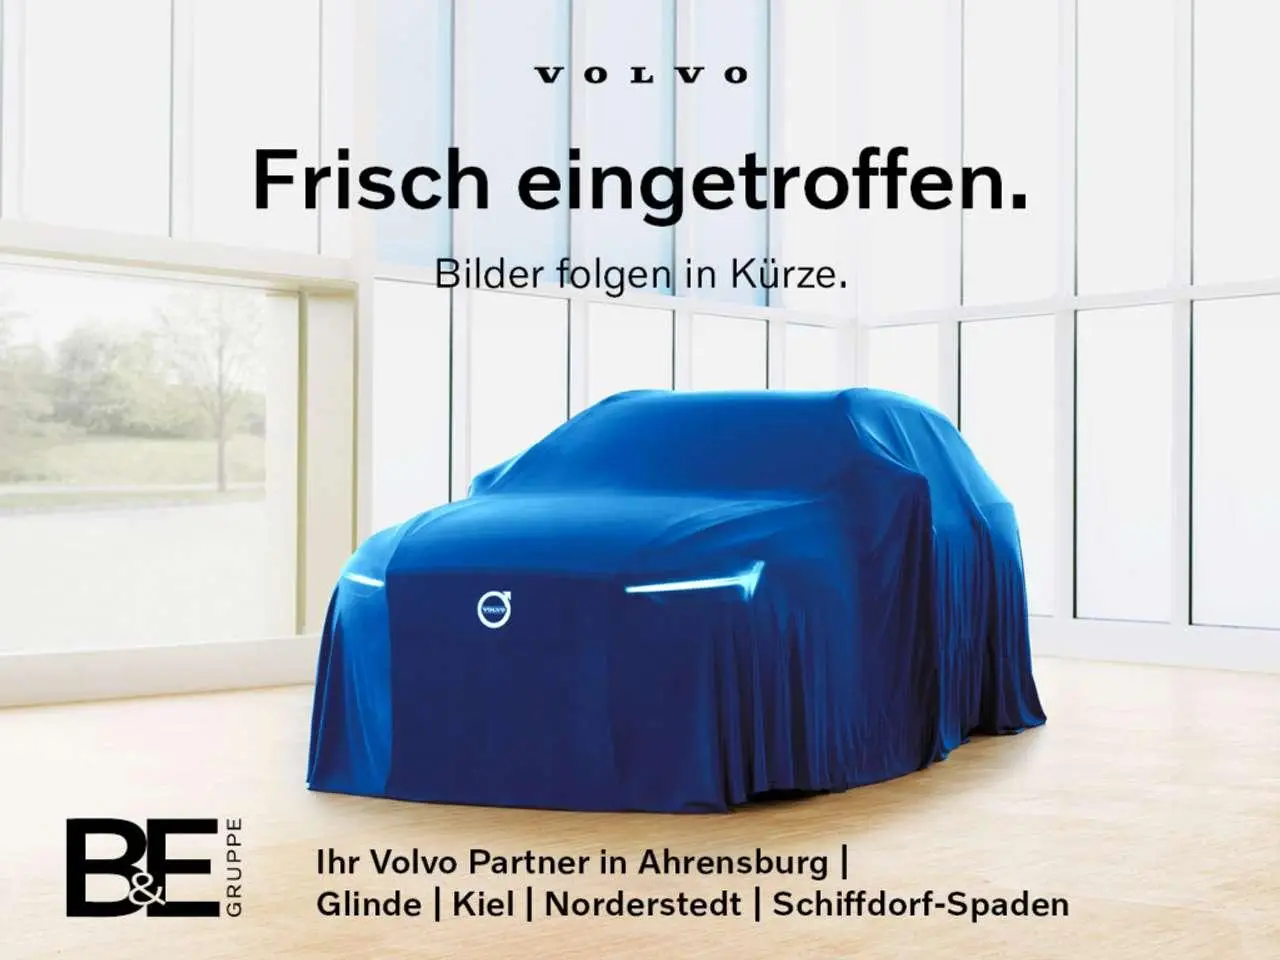 Photo 1 : Volvo Xc60 2020 Hybride